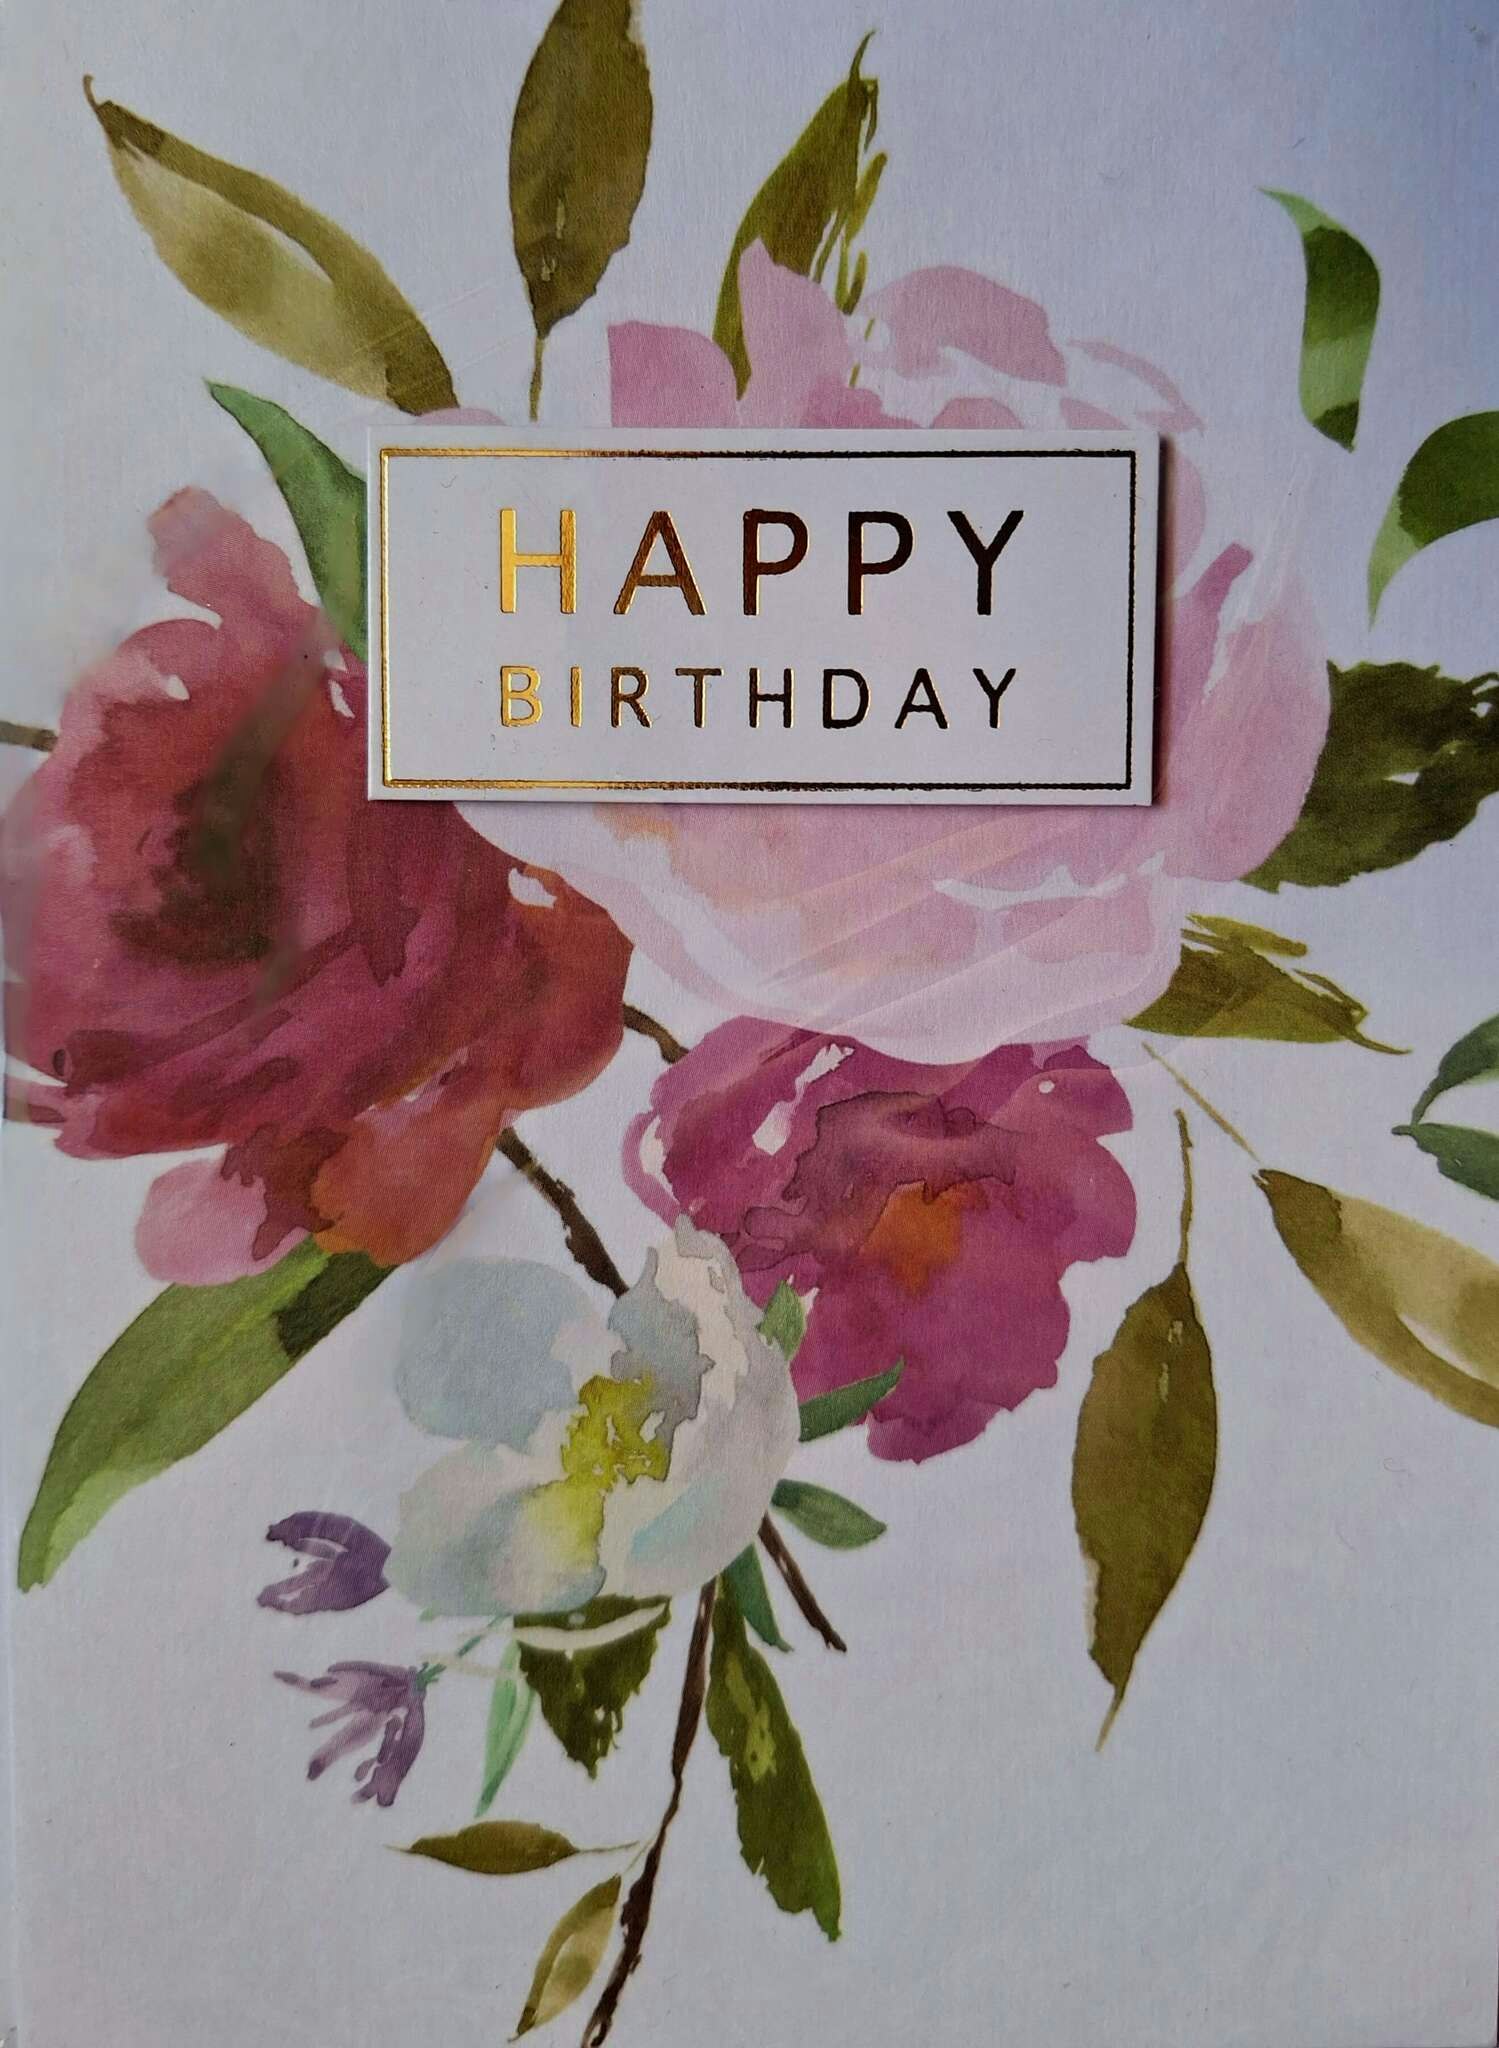 Kort med kuvert - Happy Birthday med blommande skylt (Fraktfritt)